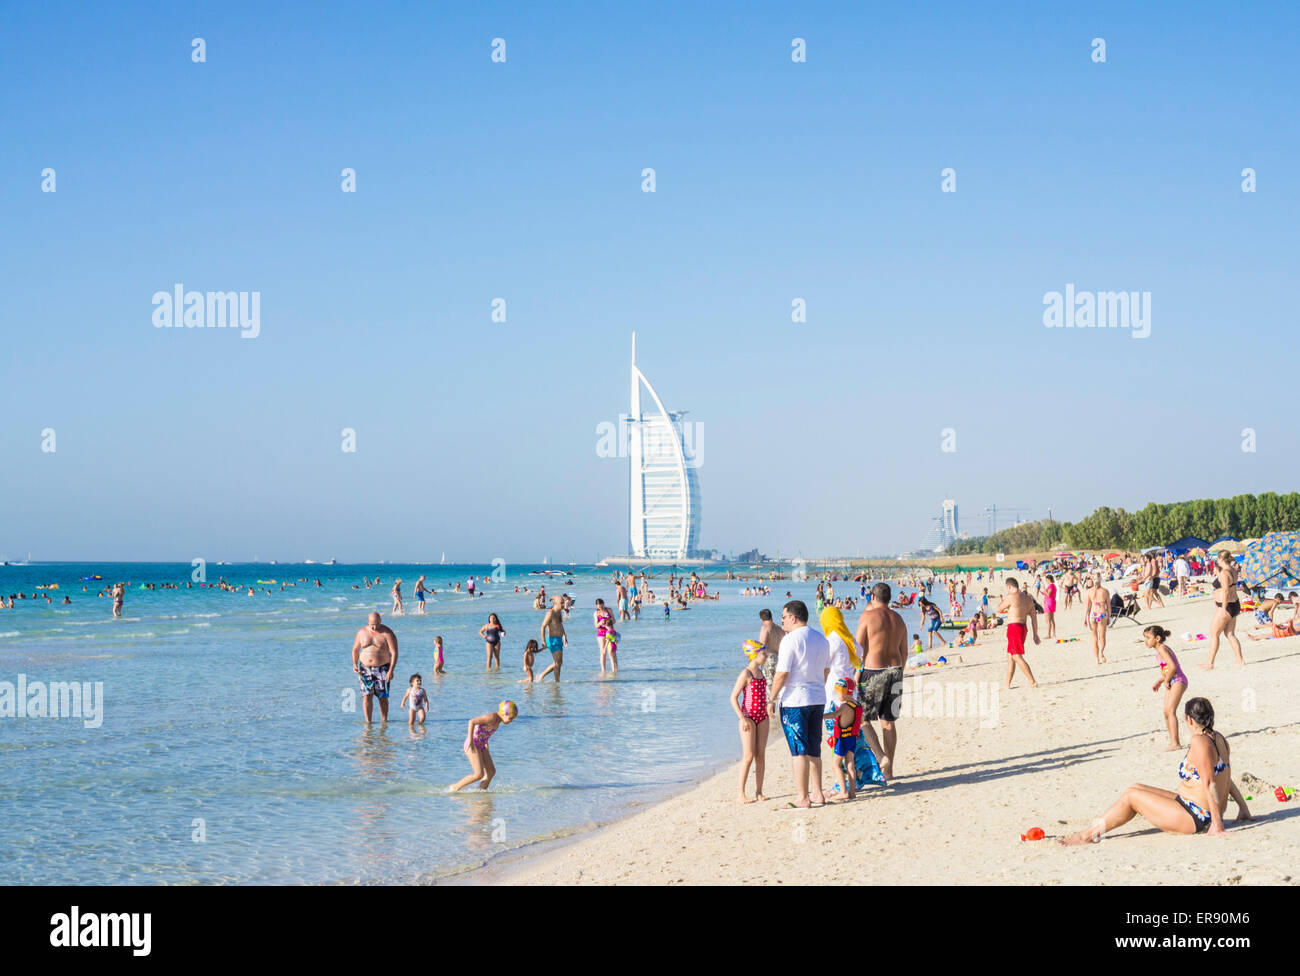 Holidaymakers on the Public Dubai Beach near the Burj al Arab Hotel, Dubai, United Arab Emirates, UAE, Middle east Stock Photo